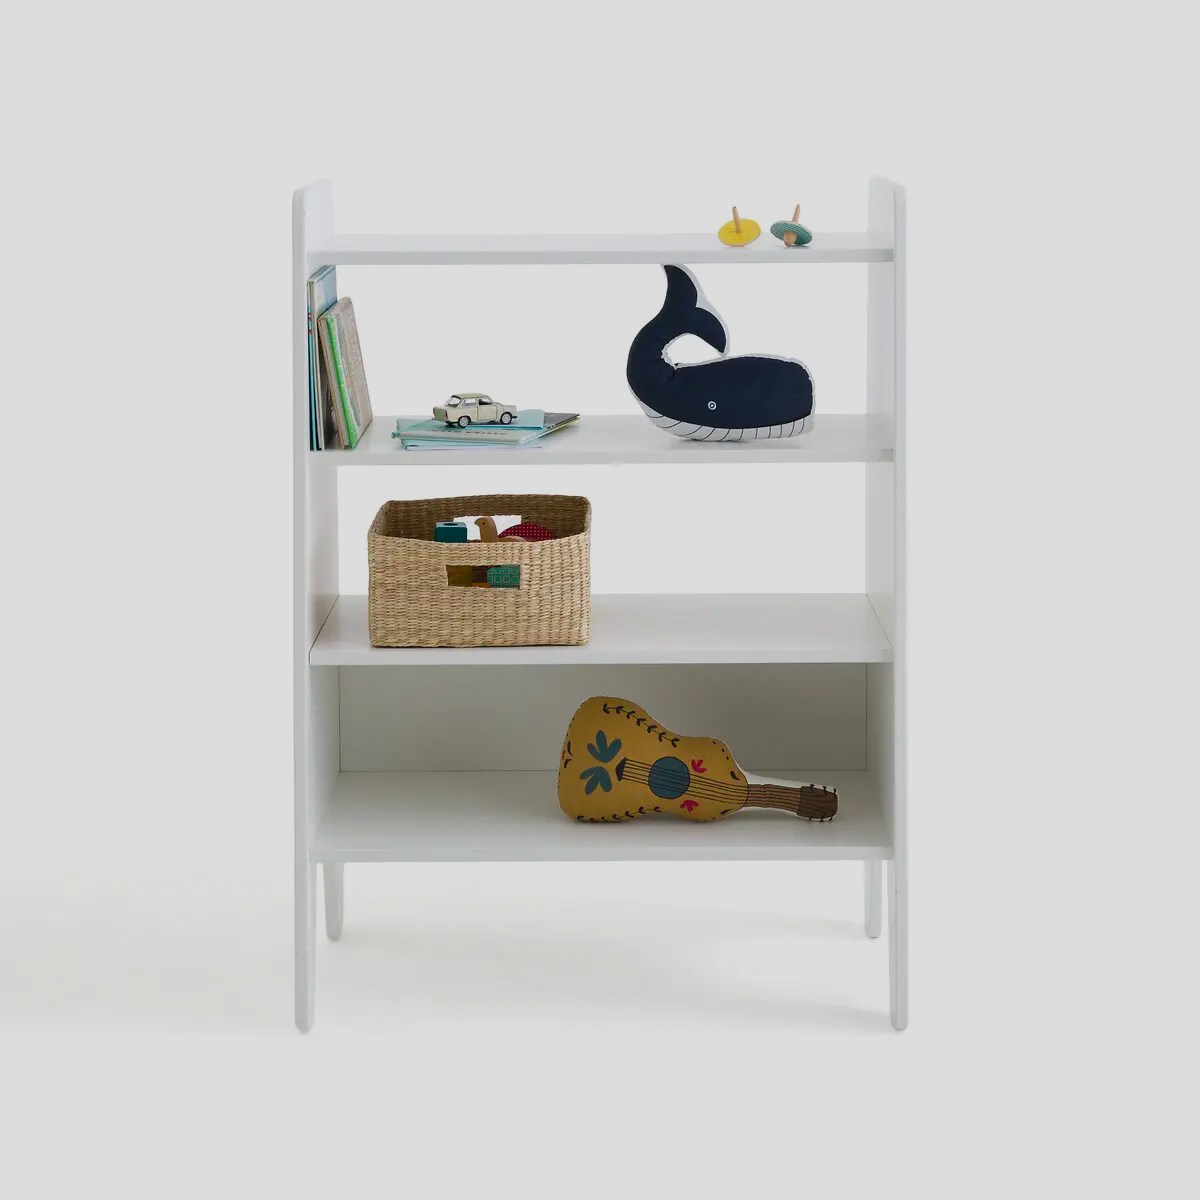 De vormgeving van deze boekenkast is mooi rond, neutraal en heeft hierdoor een vriendelijke uitstraling. 